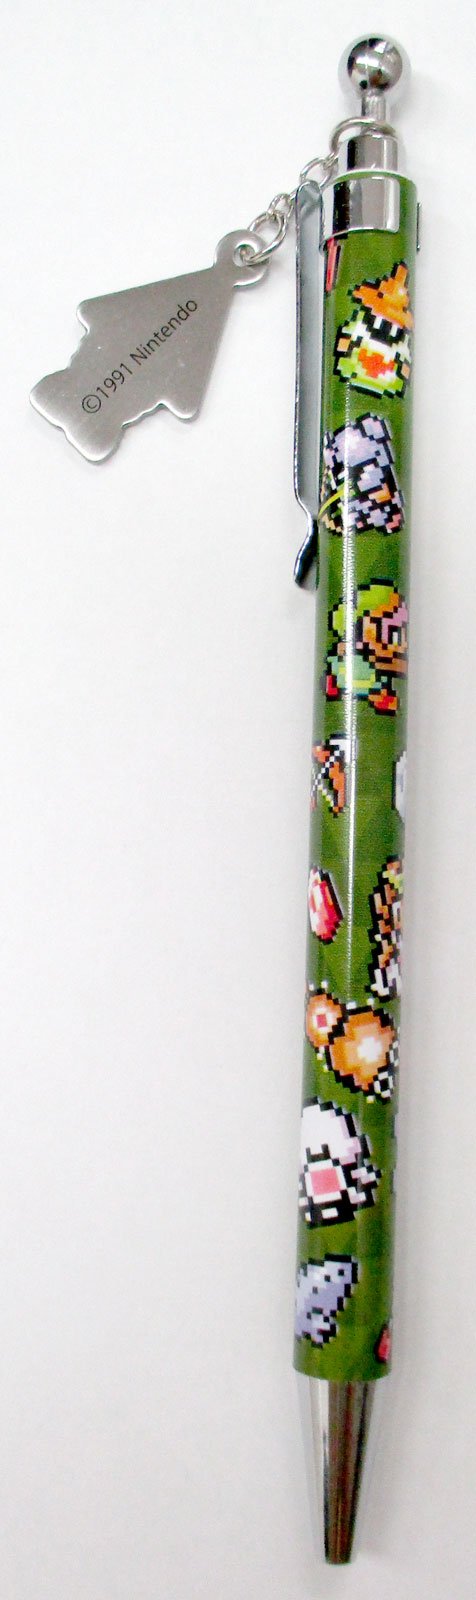 Sanei Boeki The Legend of Zelda Ballpoint Pen Pixel Art W1.1xD1.1xH14cm ZZ20 NEW_2